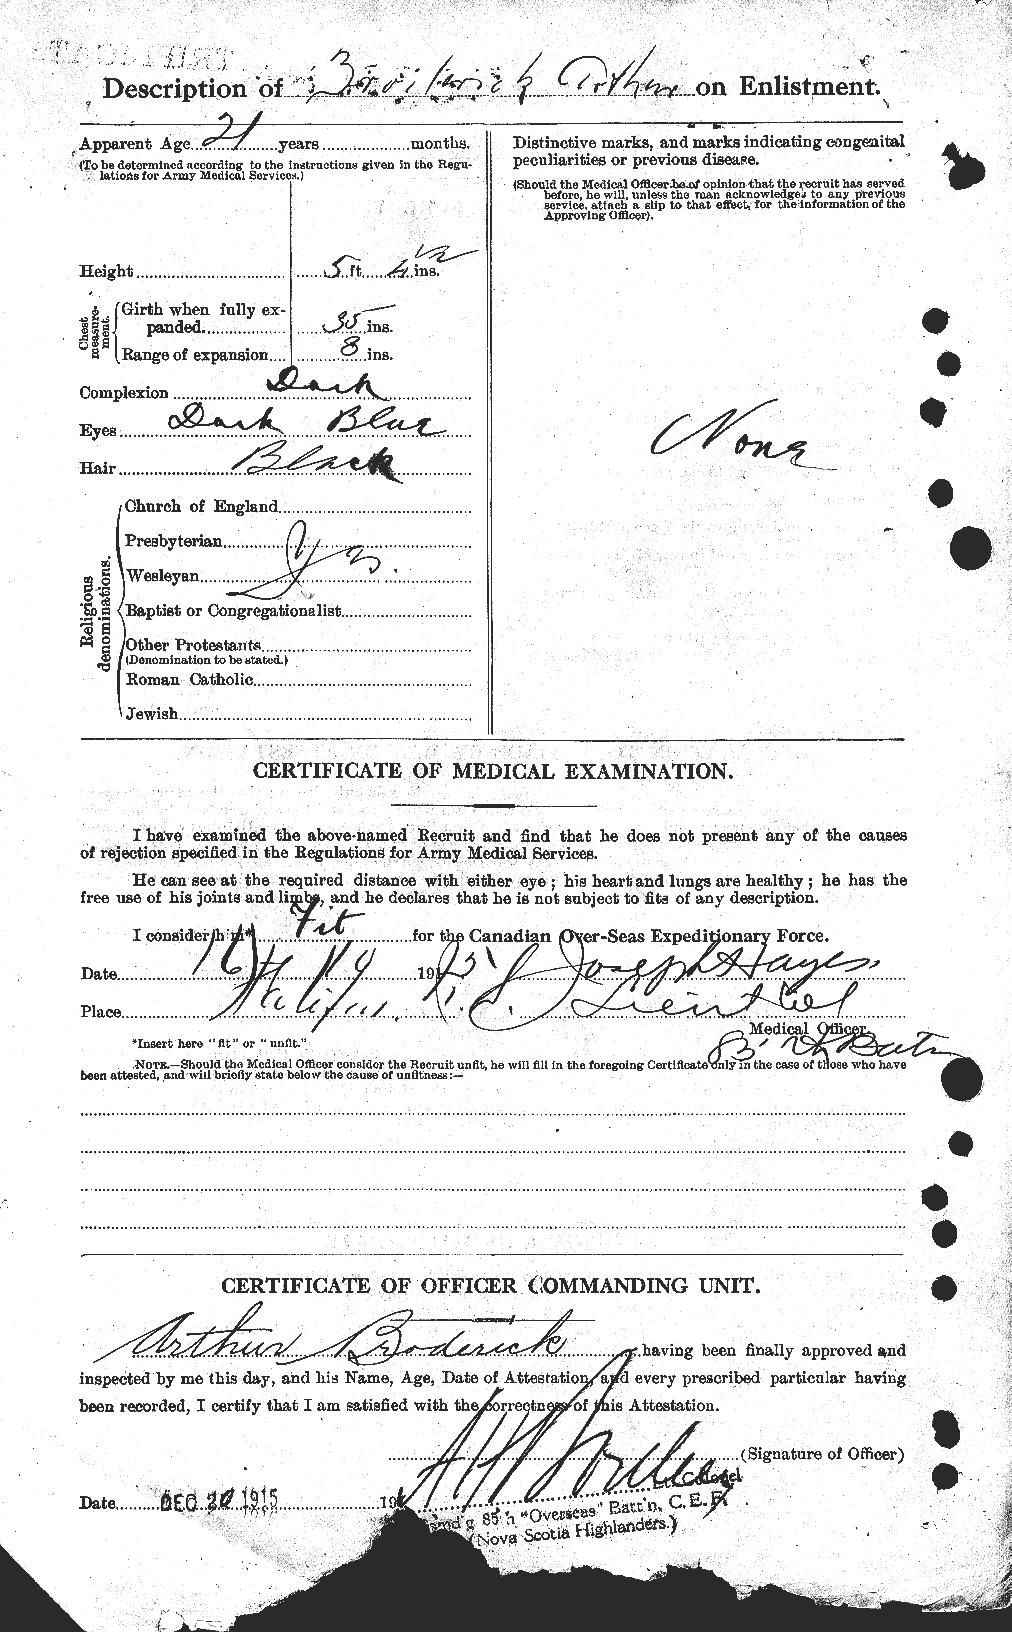 Dossiers du Personnel de la Première Guerre mondiale - CEC 260965b